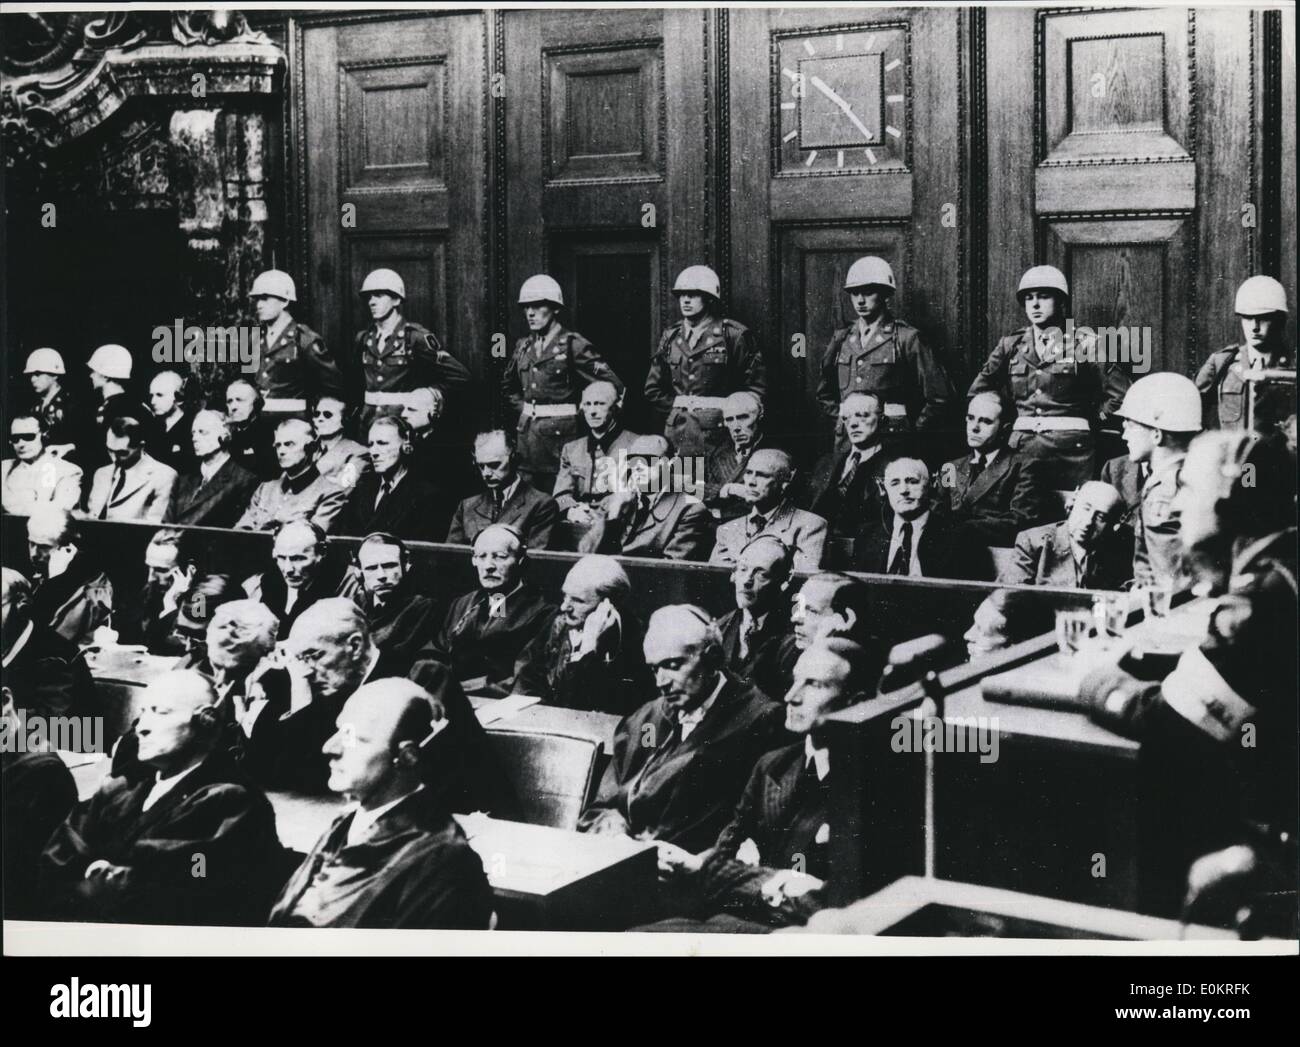 Octubre 10, 1946 - el pronunciamiento de las sentencias del Tribunal de Nuremberg: hace 30 años, el 1 de octubre de 1946, las sentencias en el juicio criminal de guerra de Nuremberg fueron anunciados. En este ensayo de mayor tamaño de la historia, las siguientes personas fueron sentenciadas a colgar: Ribbentrop, sauckel, katenbrunner, Frick, franco-inquart stroicher, para coro mixto, Rosenberg, Keitel y jodi. La Ley se suicidaron antes del juicio, después; goring Bormann había sido condenado a muerte en ausencia Foto de stock